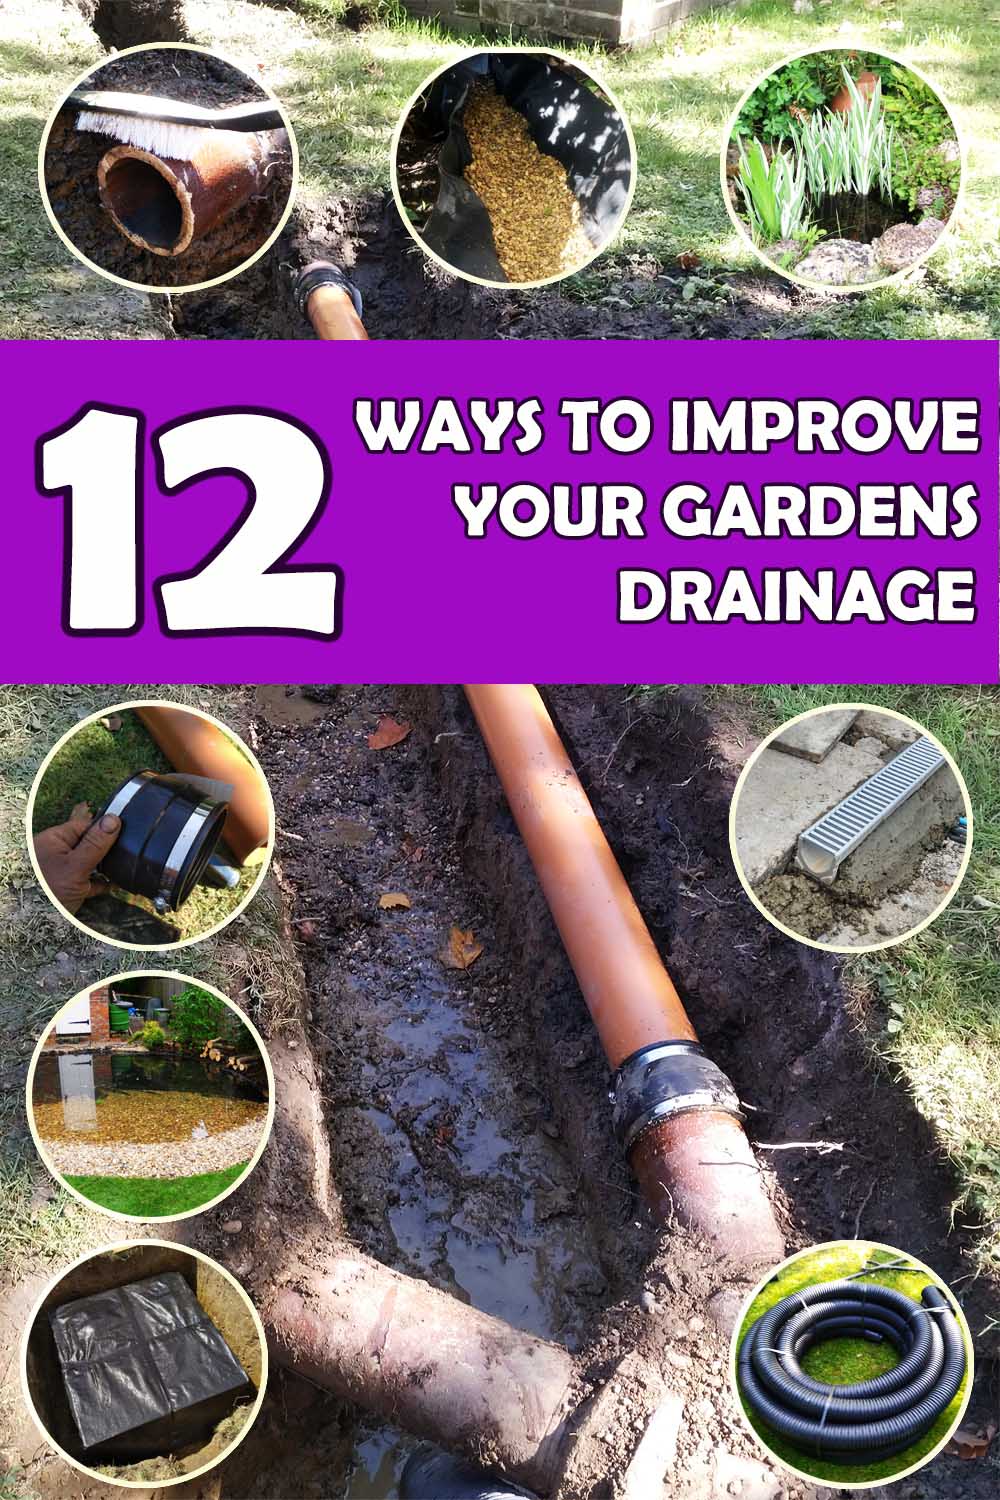 Ways to improve garden drainage